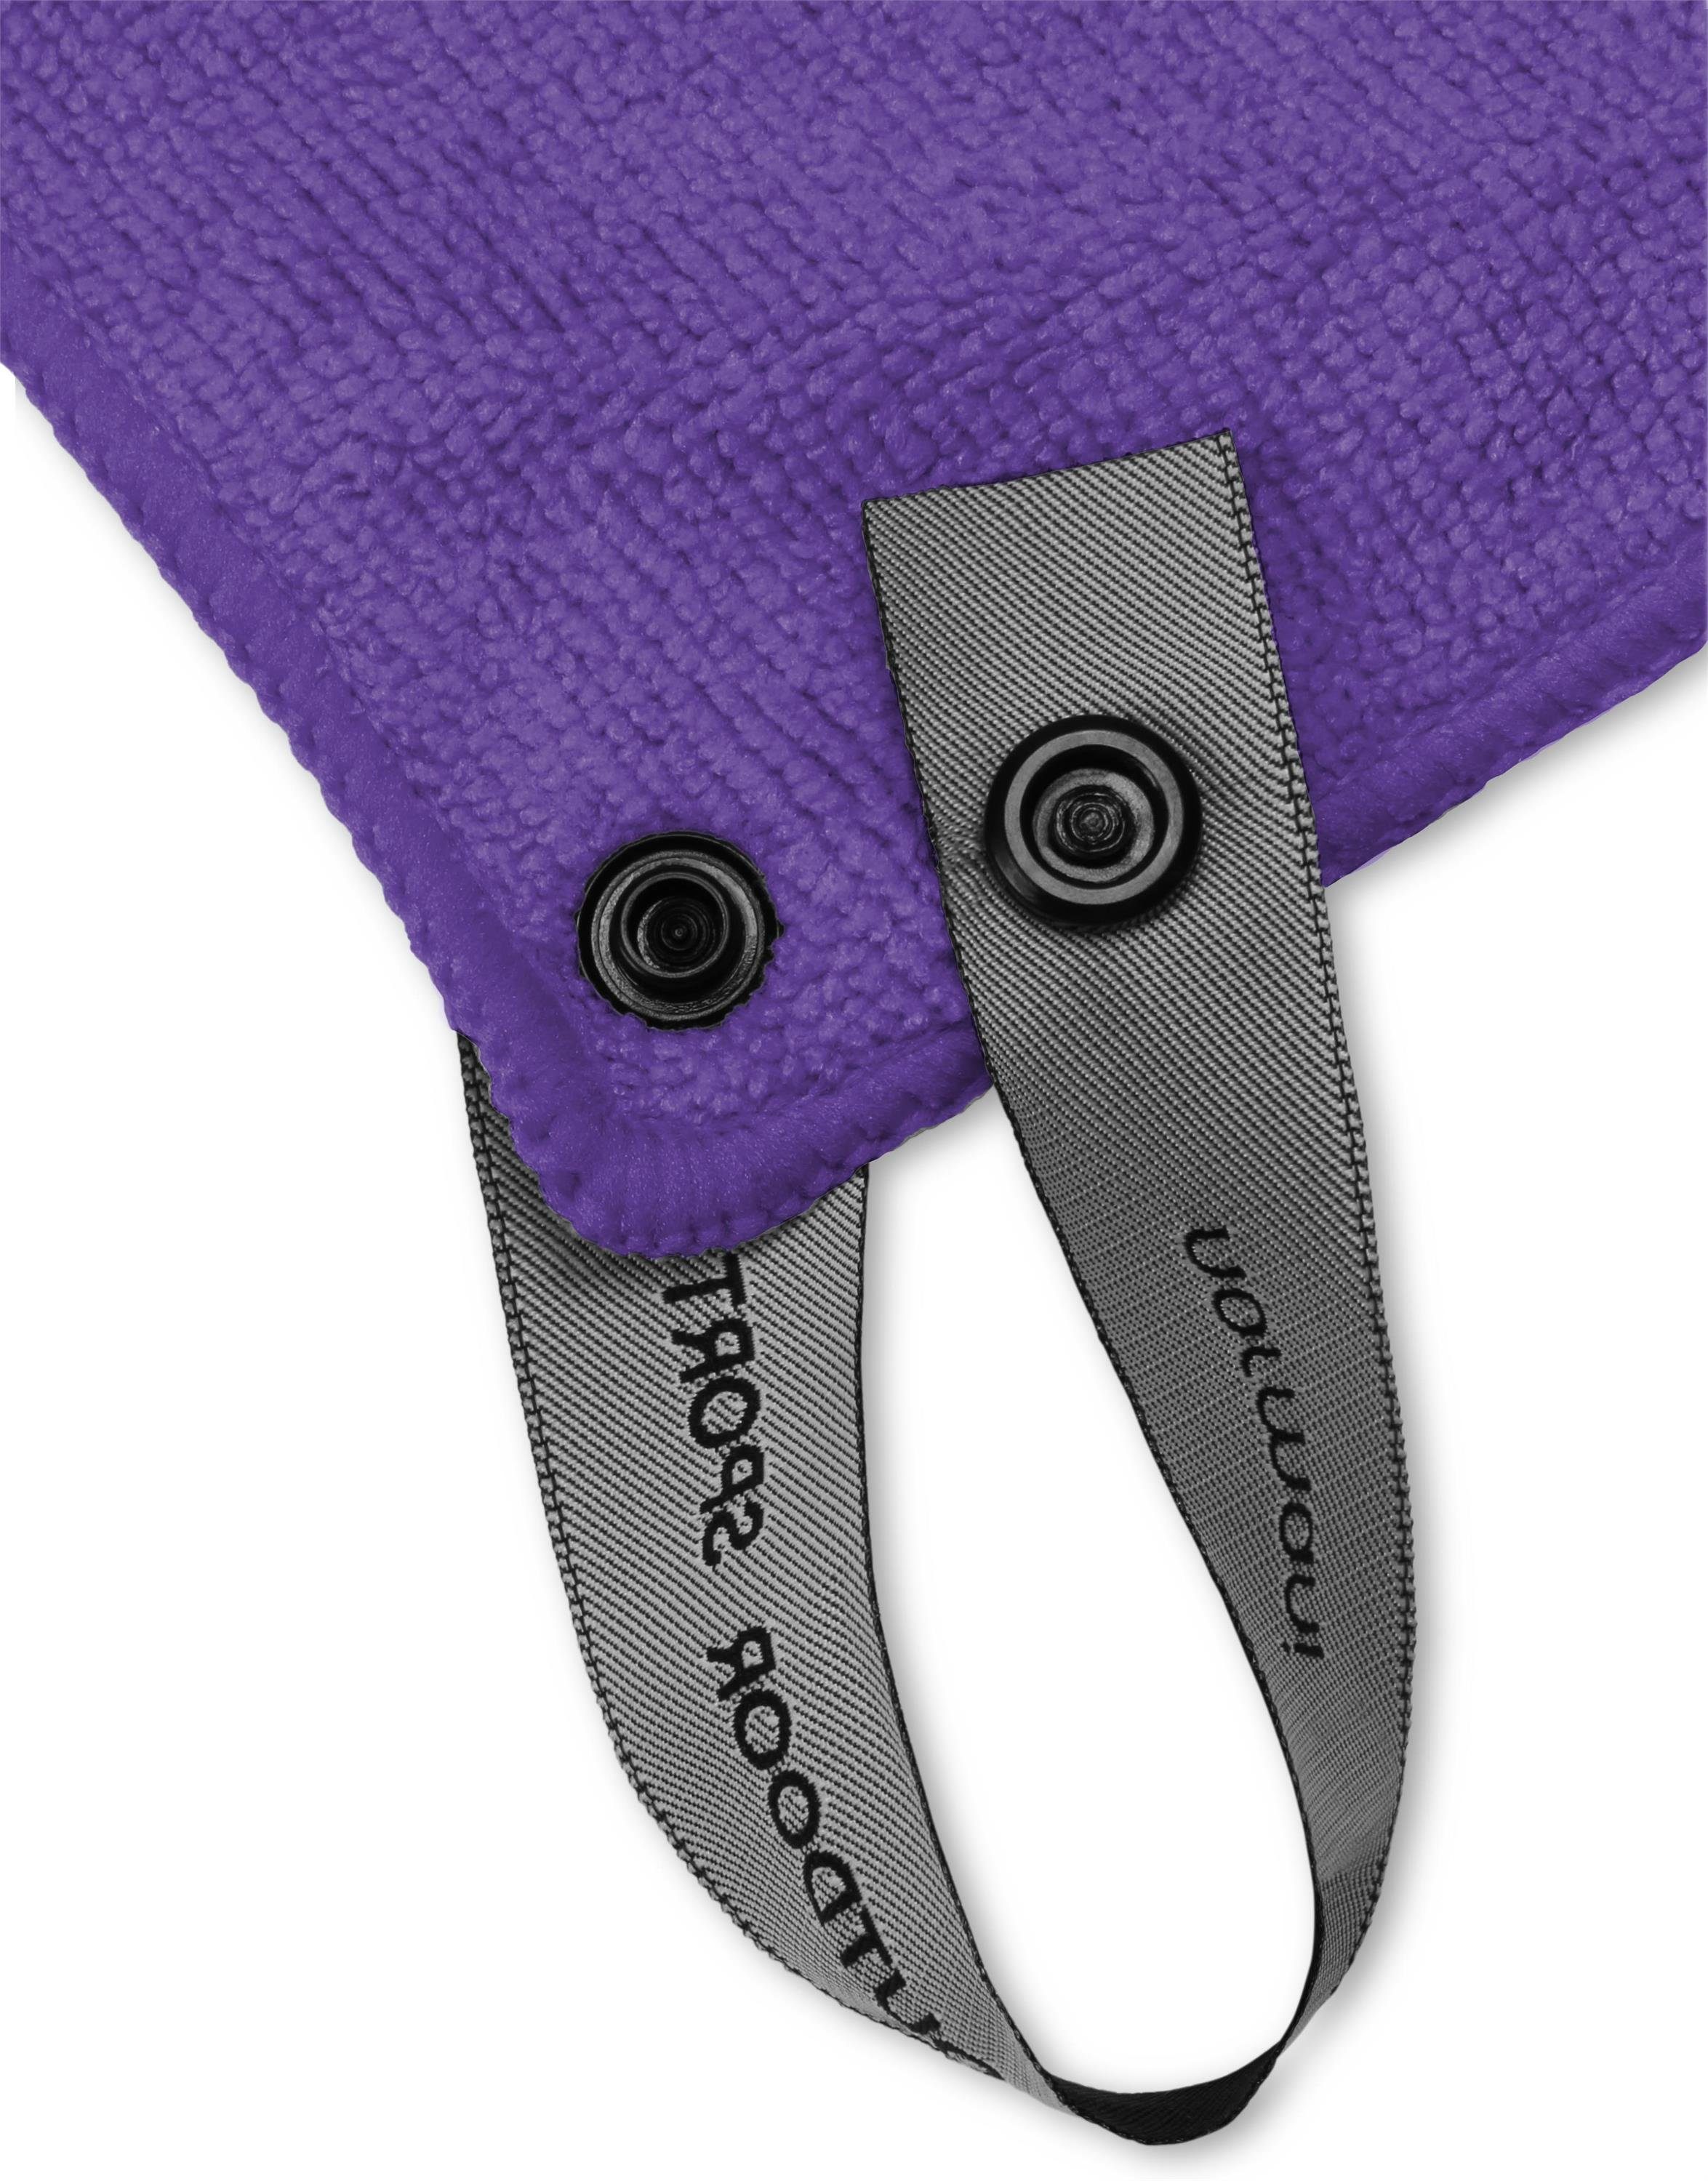 Mikrofaserhandtuch normani Terry, 40x80 Violett Reisehandtuch Polyester